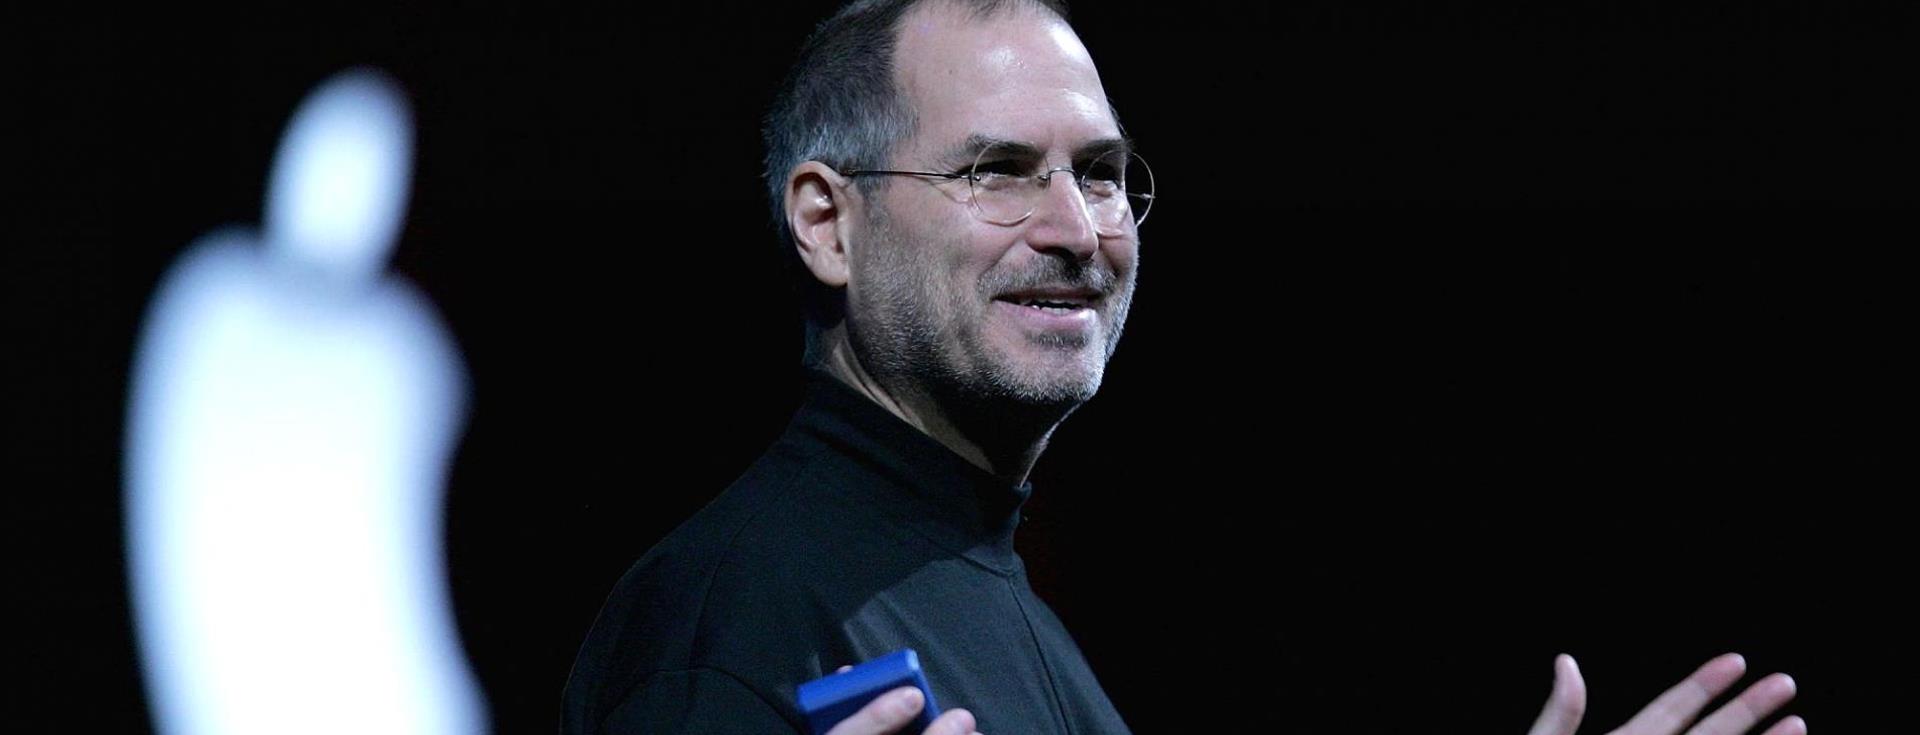 Steve Jobs'un İşe Alım Yaparken Dikkat Ettiği Tek Kişilik Özelliği